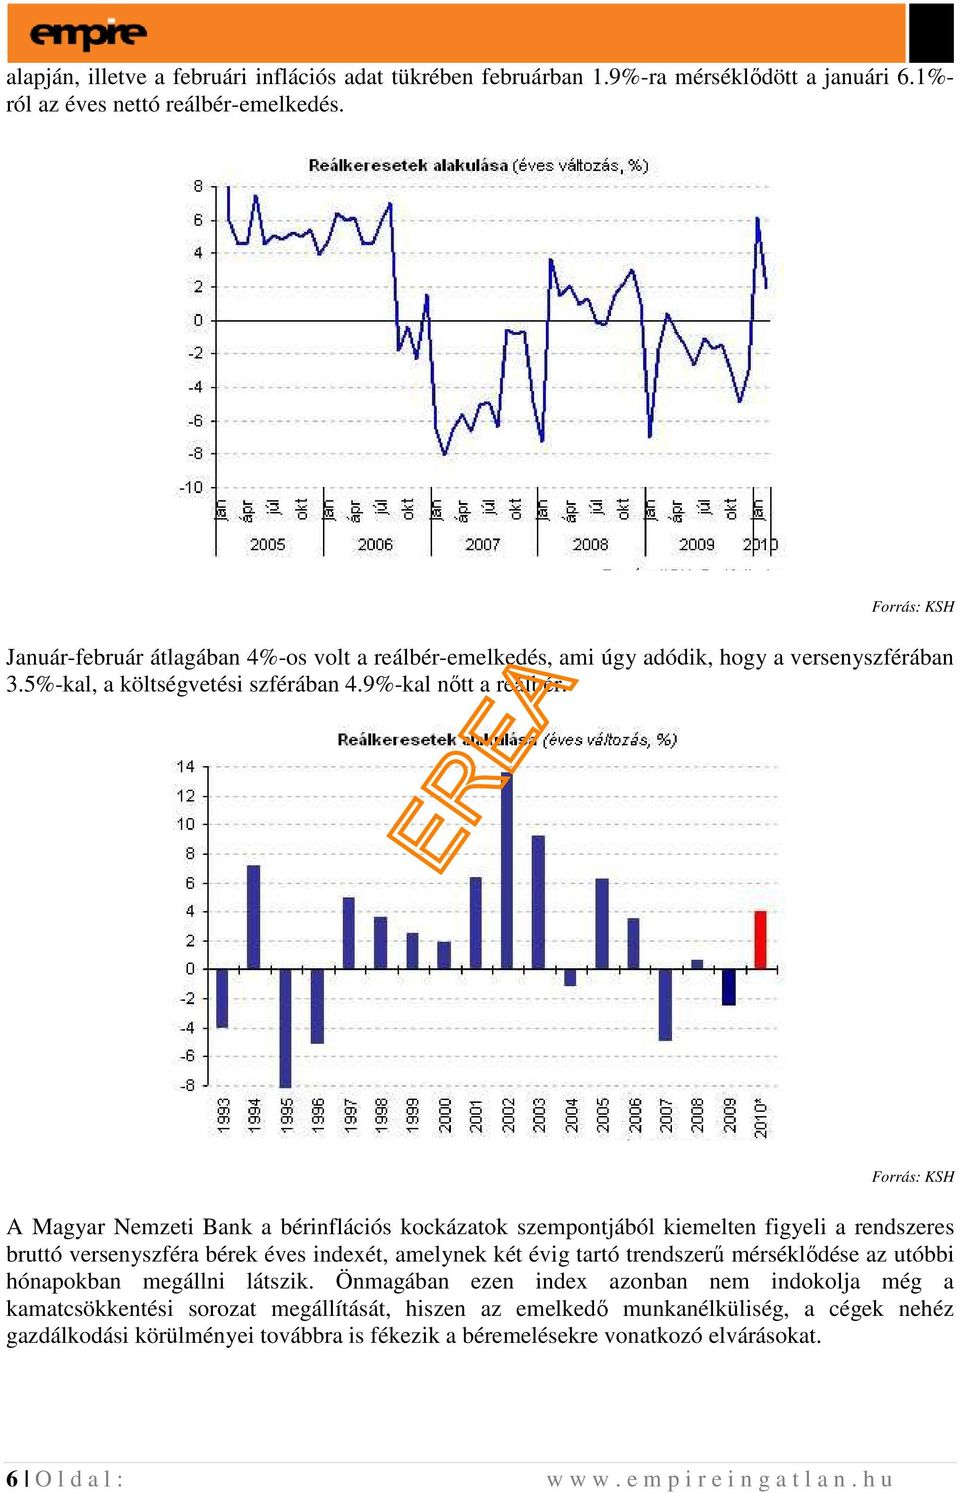 Forrás: KSH A Magyar Nemzeti Bank a bérinflációs kockázatok szempontjából kiemelten figyeli a rendszeres bruttó versenyszféra bérek éves indexét, amelynek két évig tartó trendszerő mérséklıdése az